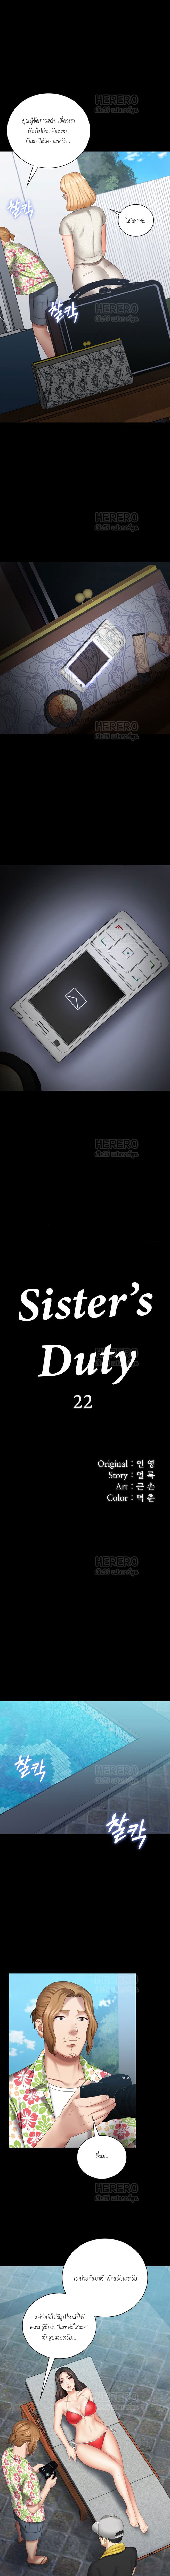 Sister's Duty 22 (1)